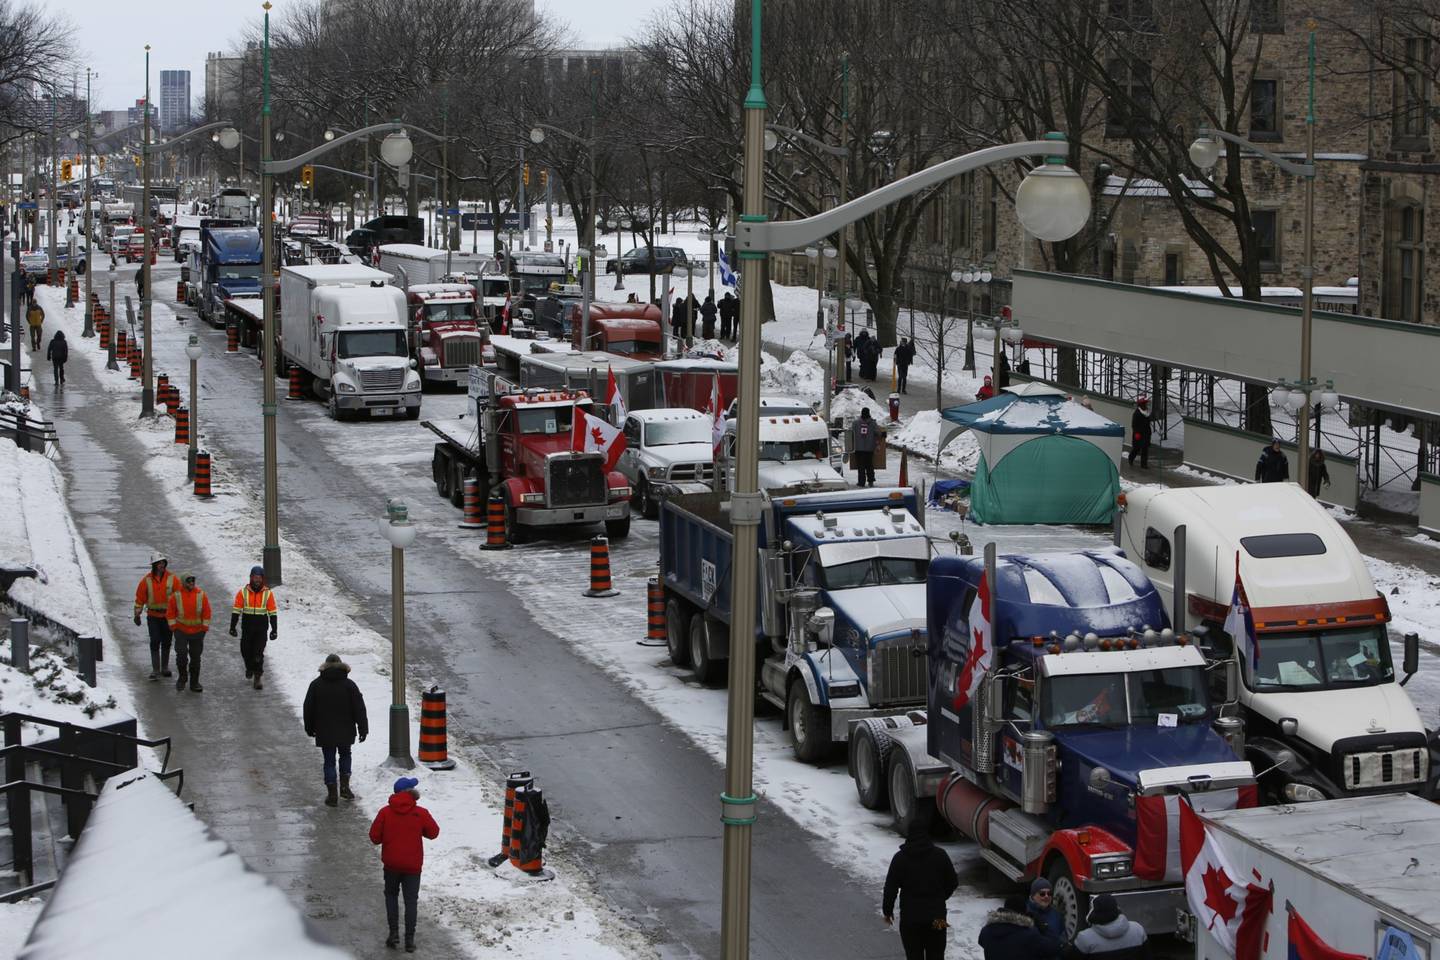 Los camiones del "Freedom Convoy" bloquean las calles del centro durante una manifestación en Ottawa, Ontario, Canadá, el jueves 3 de febrero de 2022.dfd